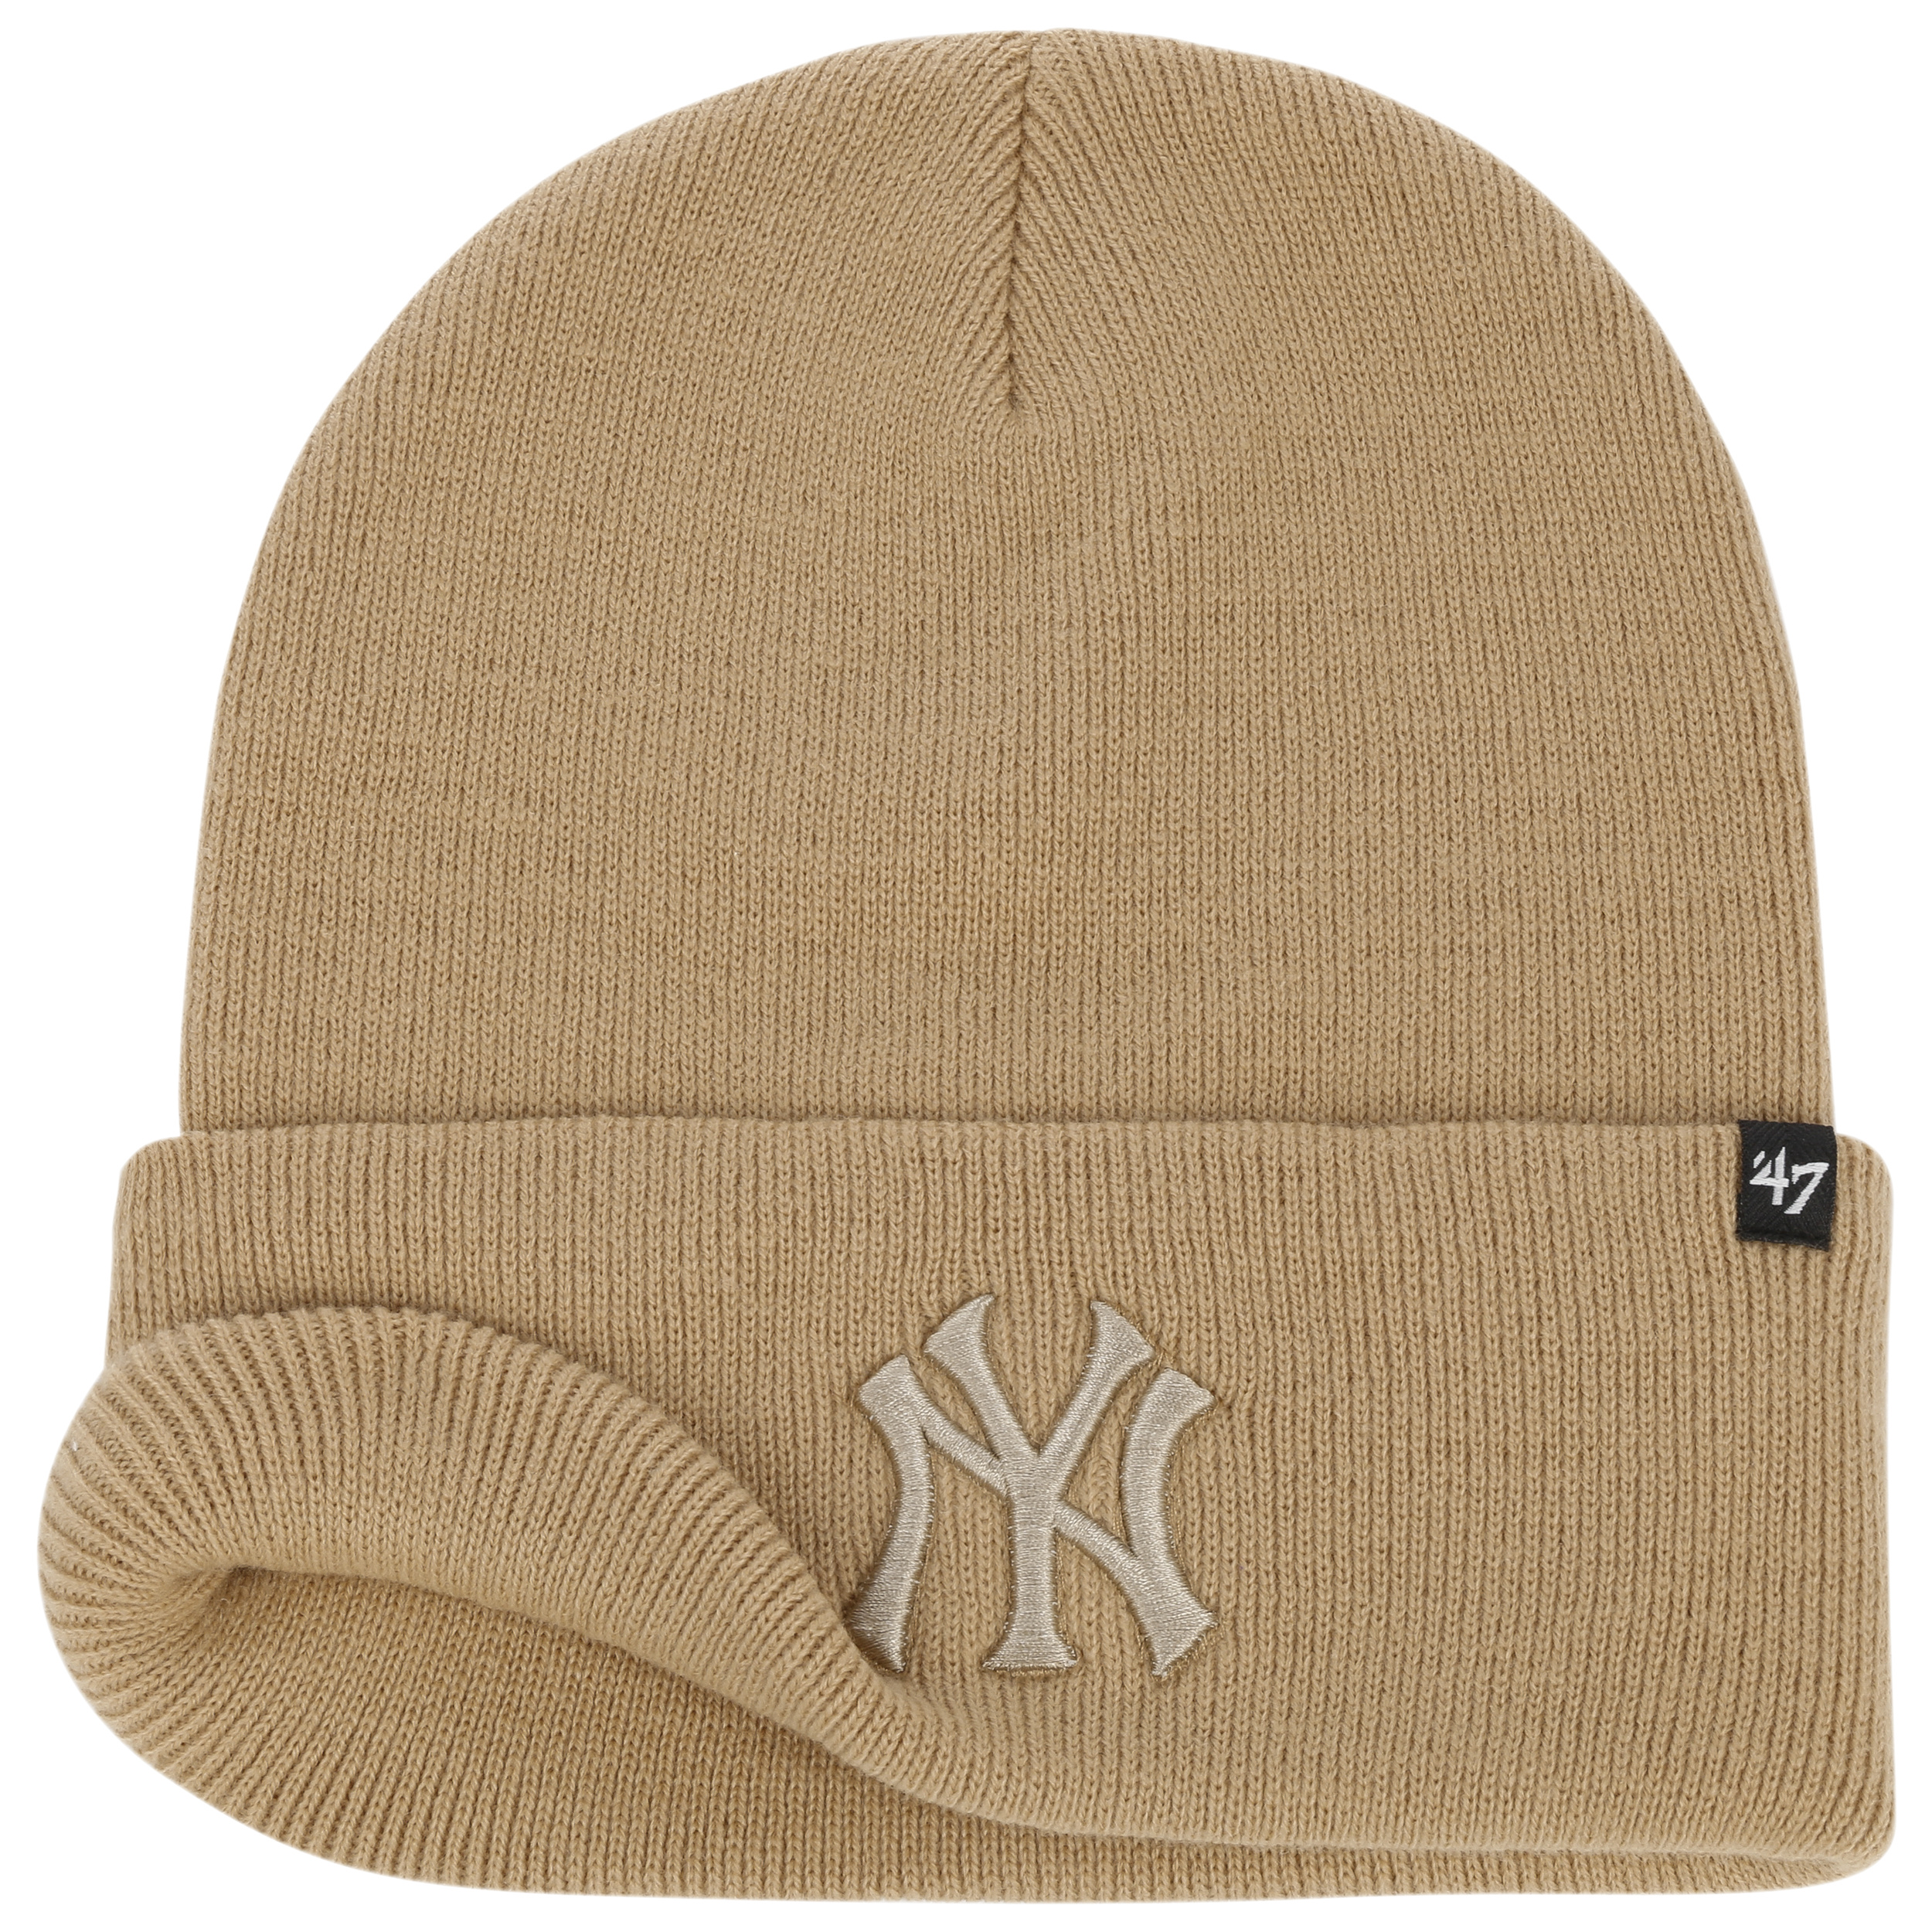 New York Highlanders Grey Club Coop Cuff Beanie Hat